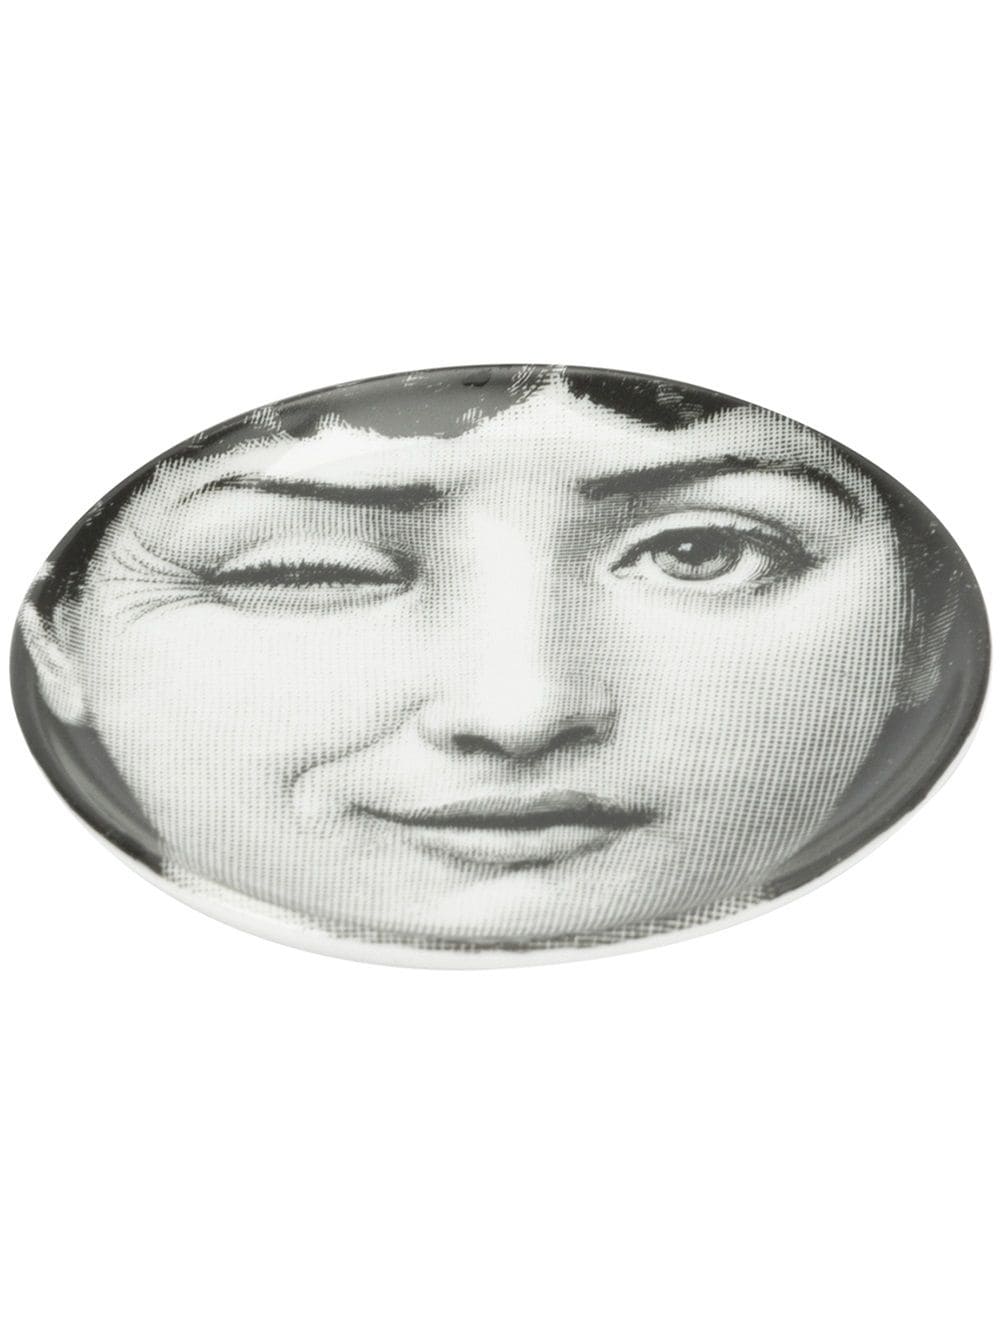 фото Fornasetti подставка с изображением женщины